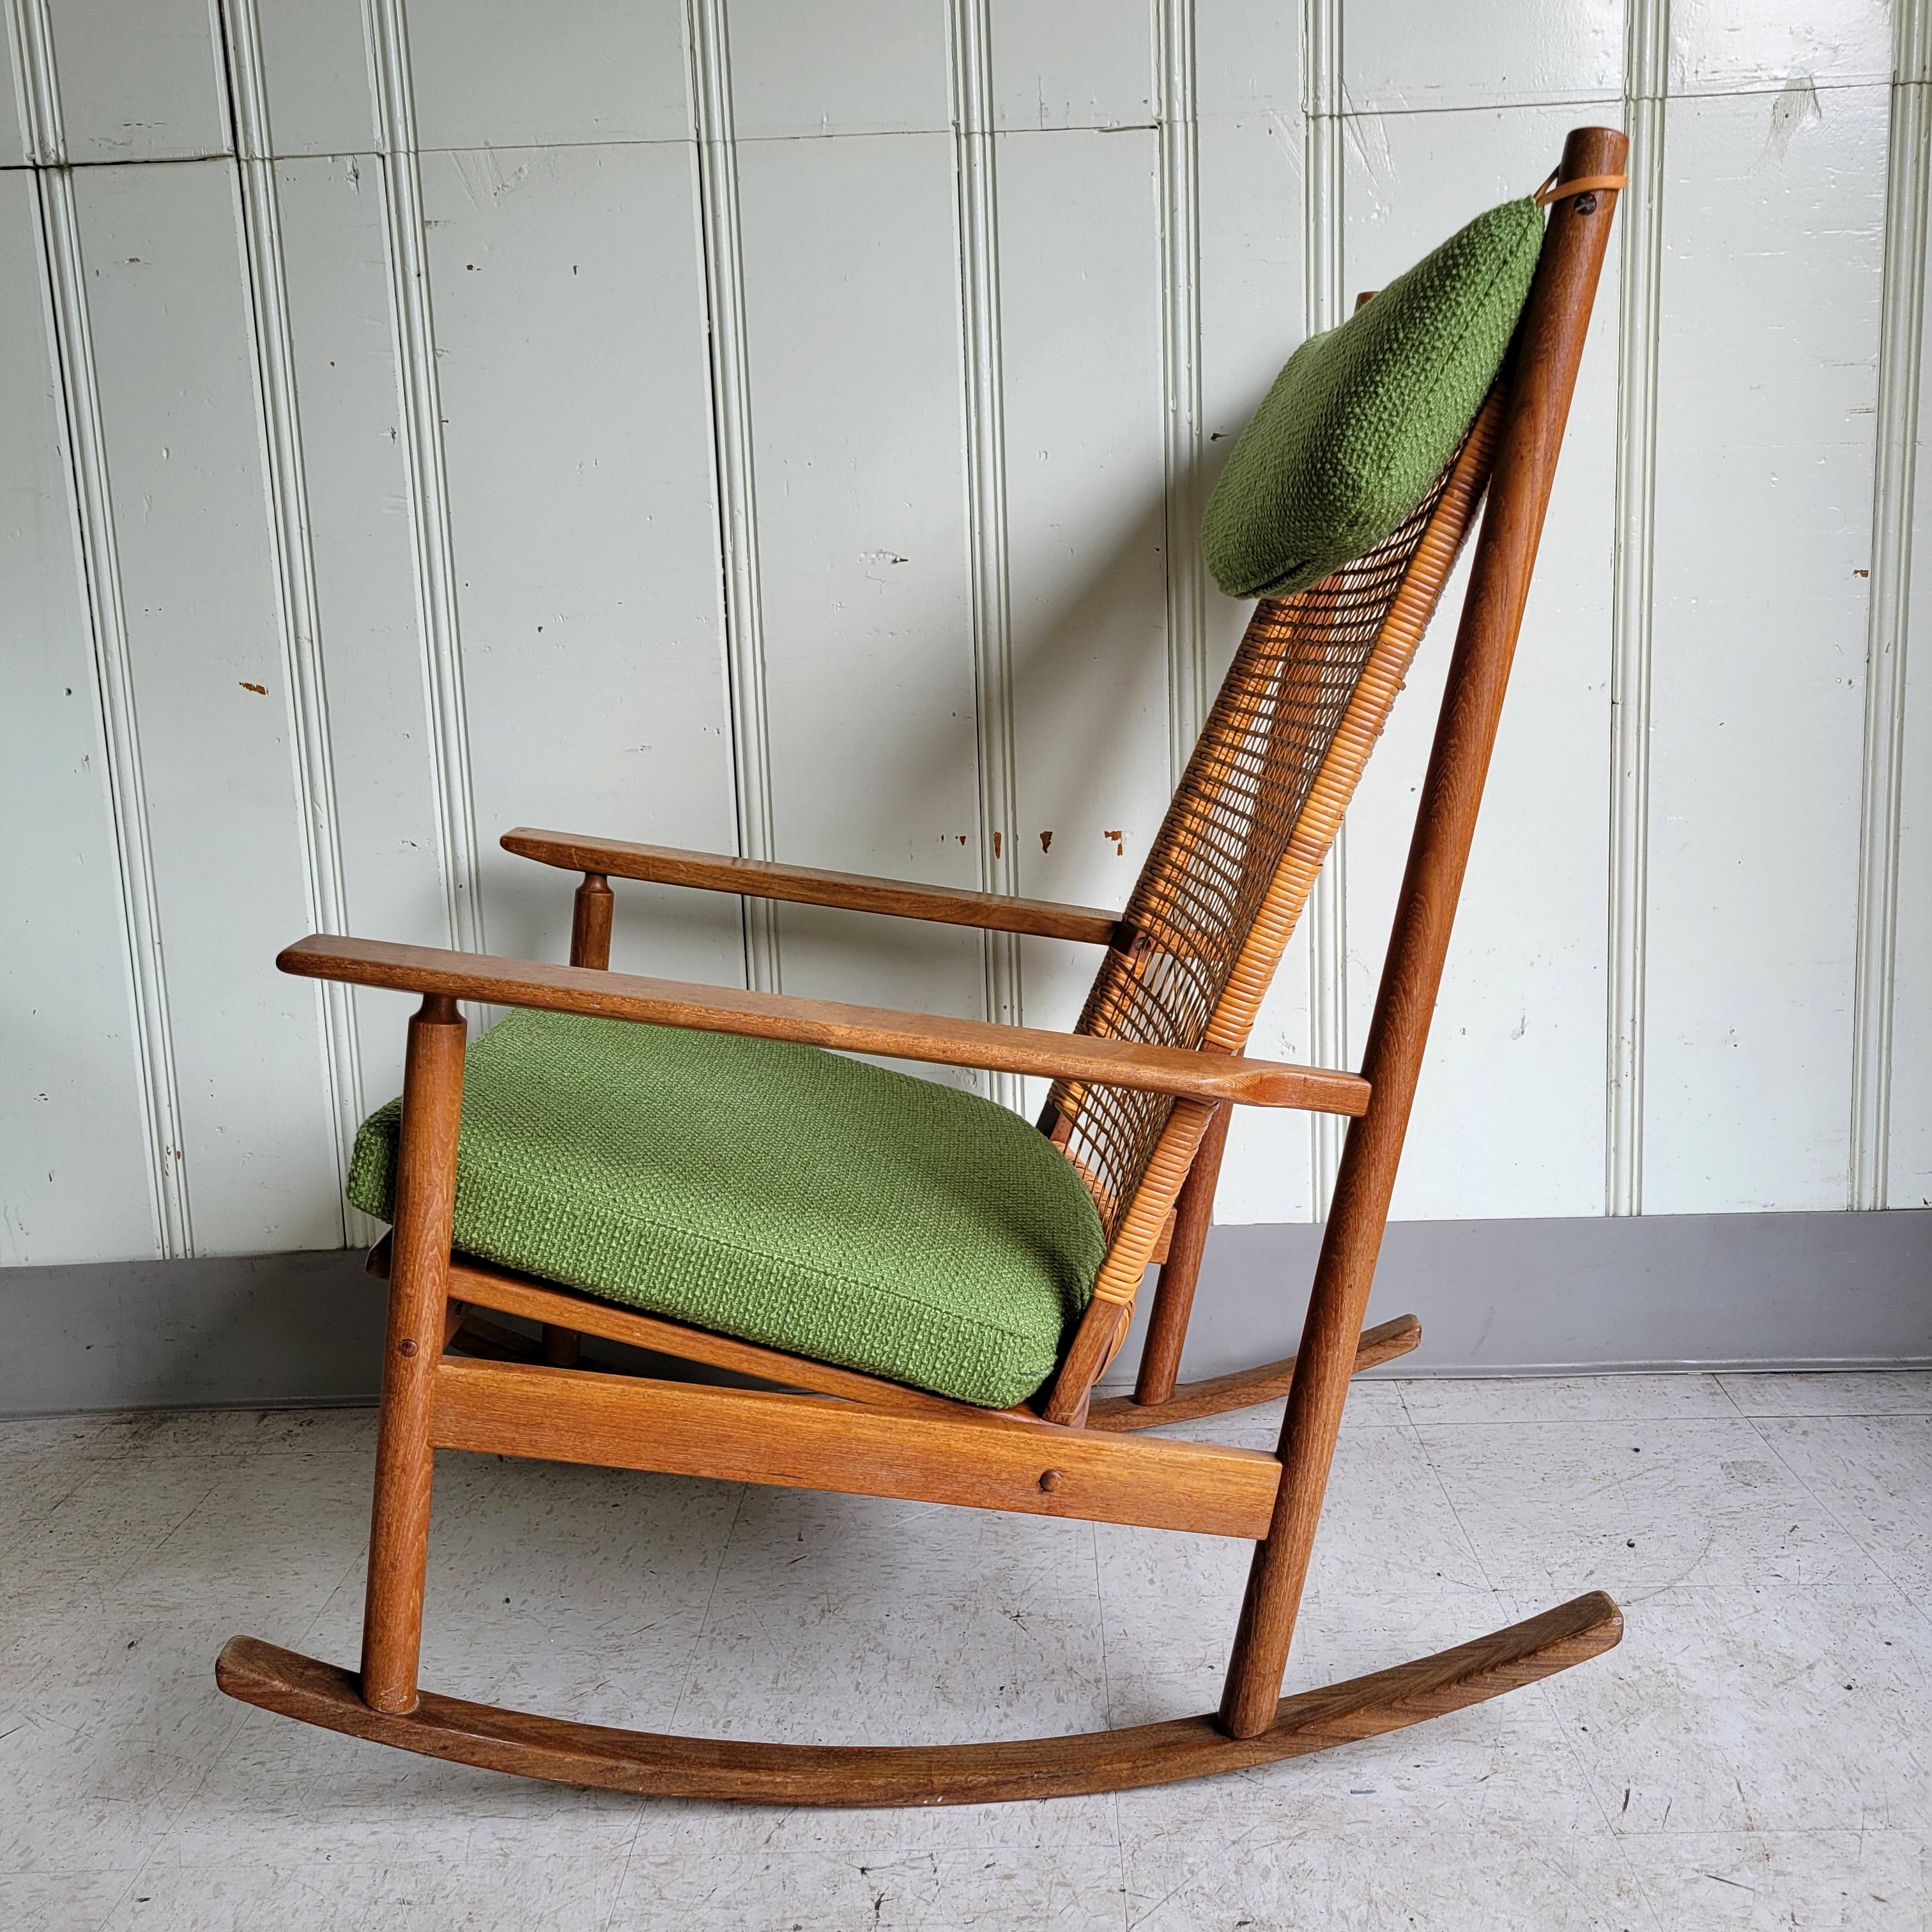 Un fauteuil à bascule original Hans Olsen pour DUX en teck et bois d'afromosia. Une chaise magnifiquement proportionnée et conçue. Tous les éléments fonctionnent bien ensemble. La chaleur du bois, le cannage tressé, le rembourrage en laine et